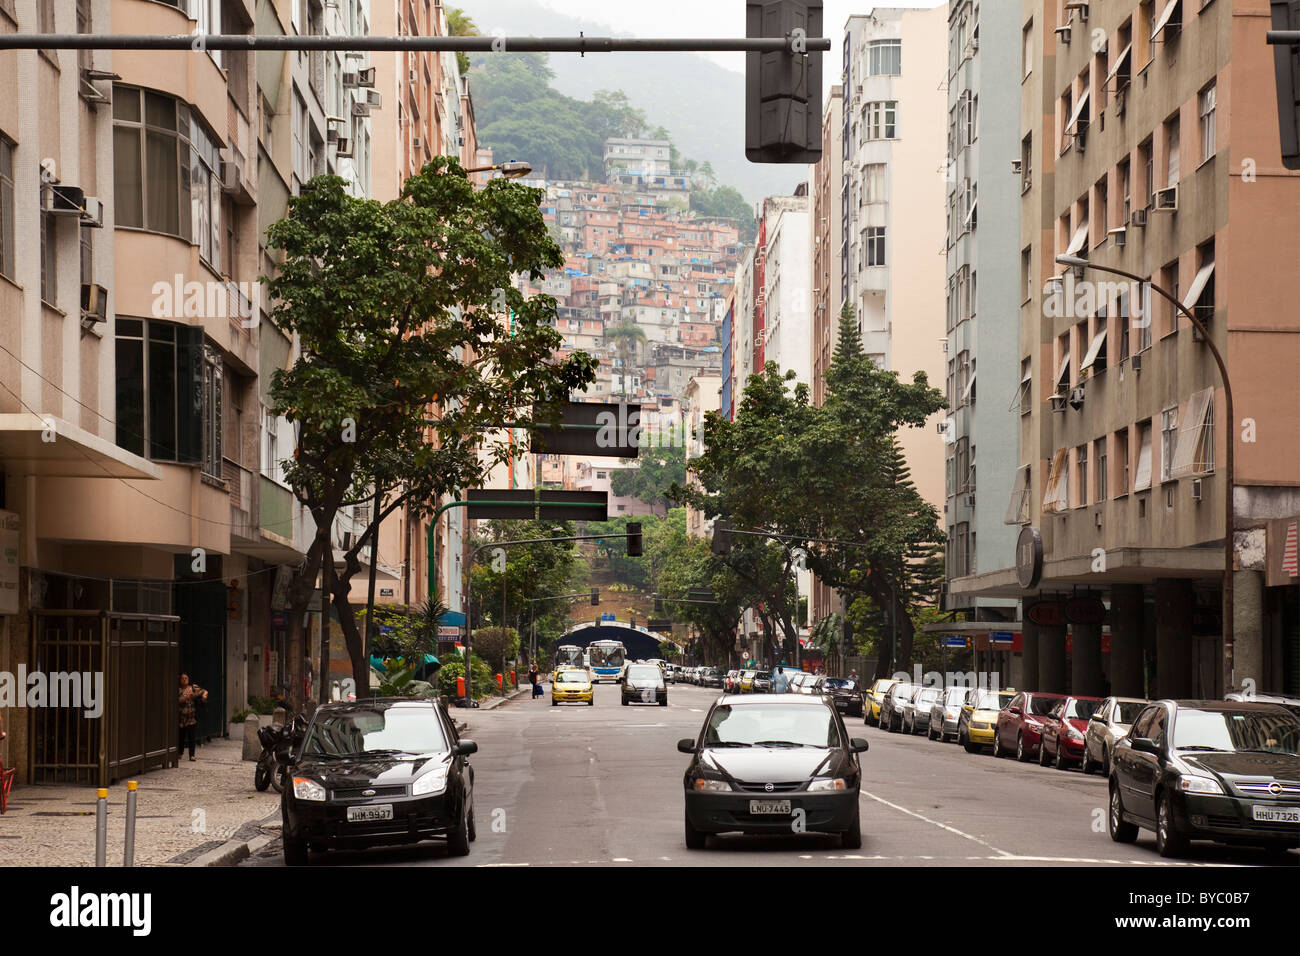 Vista della città di Rio de Janeiro, mostrando Favelas o Bidonville sulla collina in background. Rio de Janeiro, Brasile, Sud America. Foto Stock